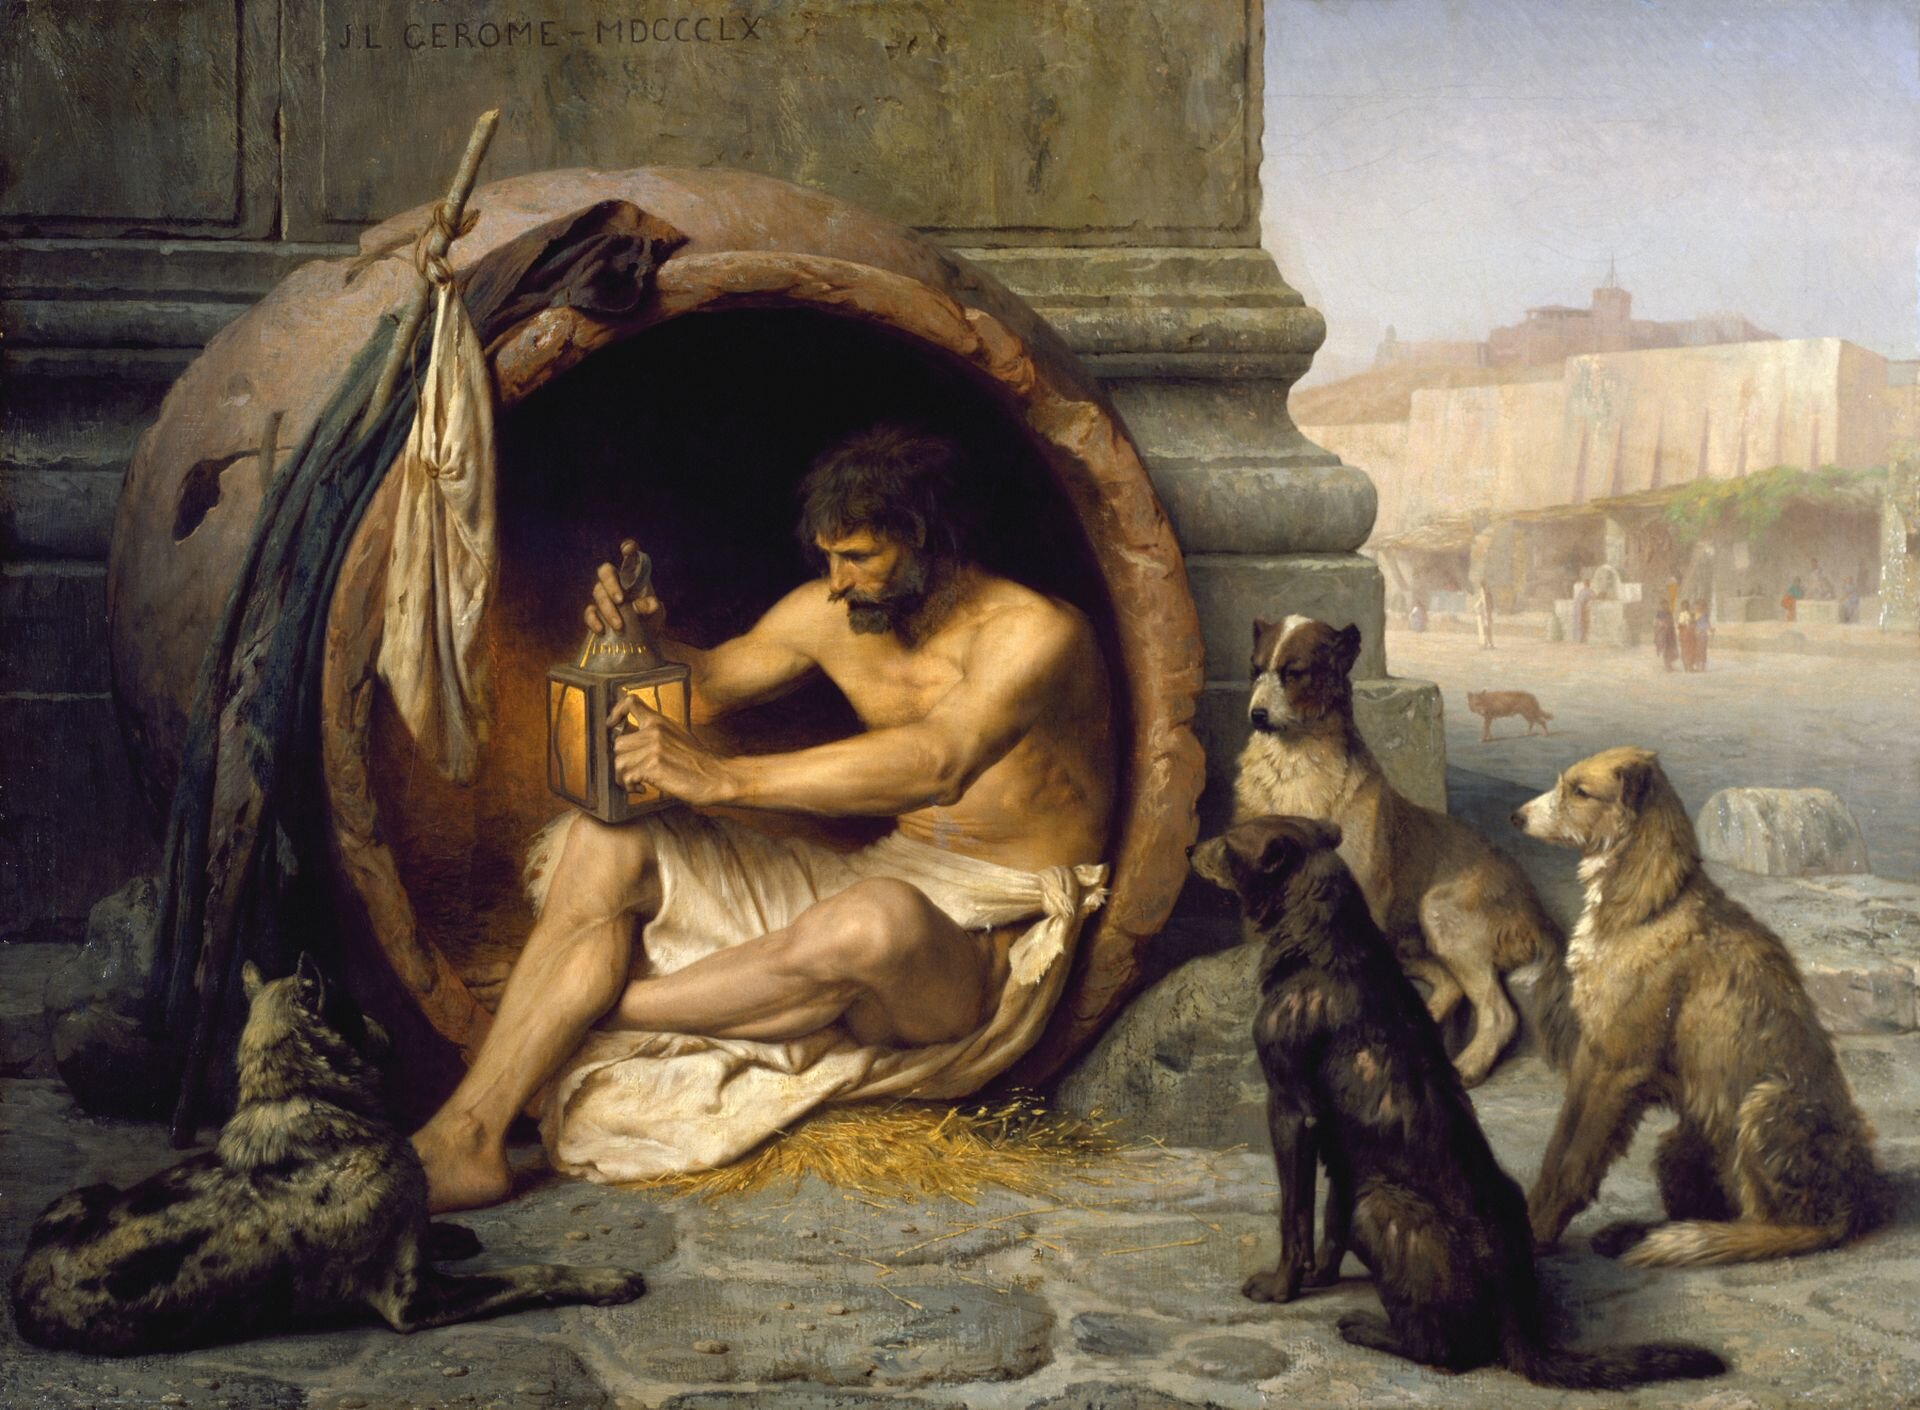 Ilustracja przedstawia obraz Jean-Léon Gérôme pod tytułem „Diogenes”. Postać siedzi w glinianym naczyniu w Metroon w Atenach. Grecki filozof zapala lampę w świetle dnia, w którym miał szukać uczciwego człowieka. Jego towarzyszami są psy, które służyły również jako symbole jego "cynickiej" filozofii podkreślającej surową egzystencję.